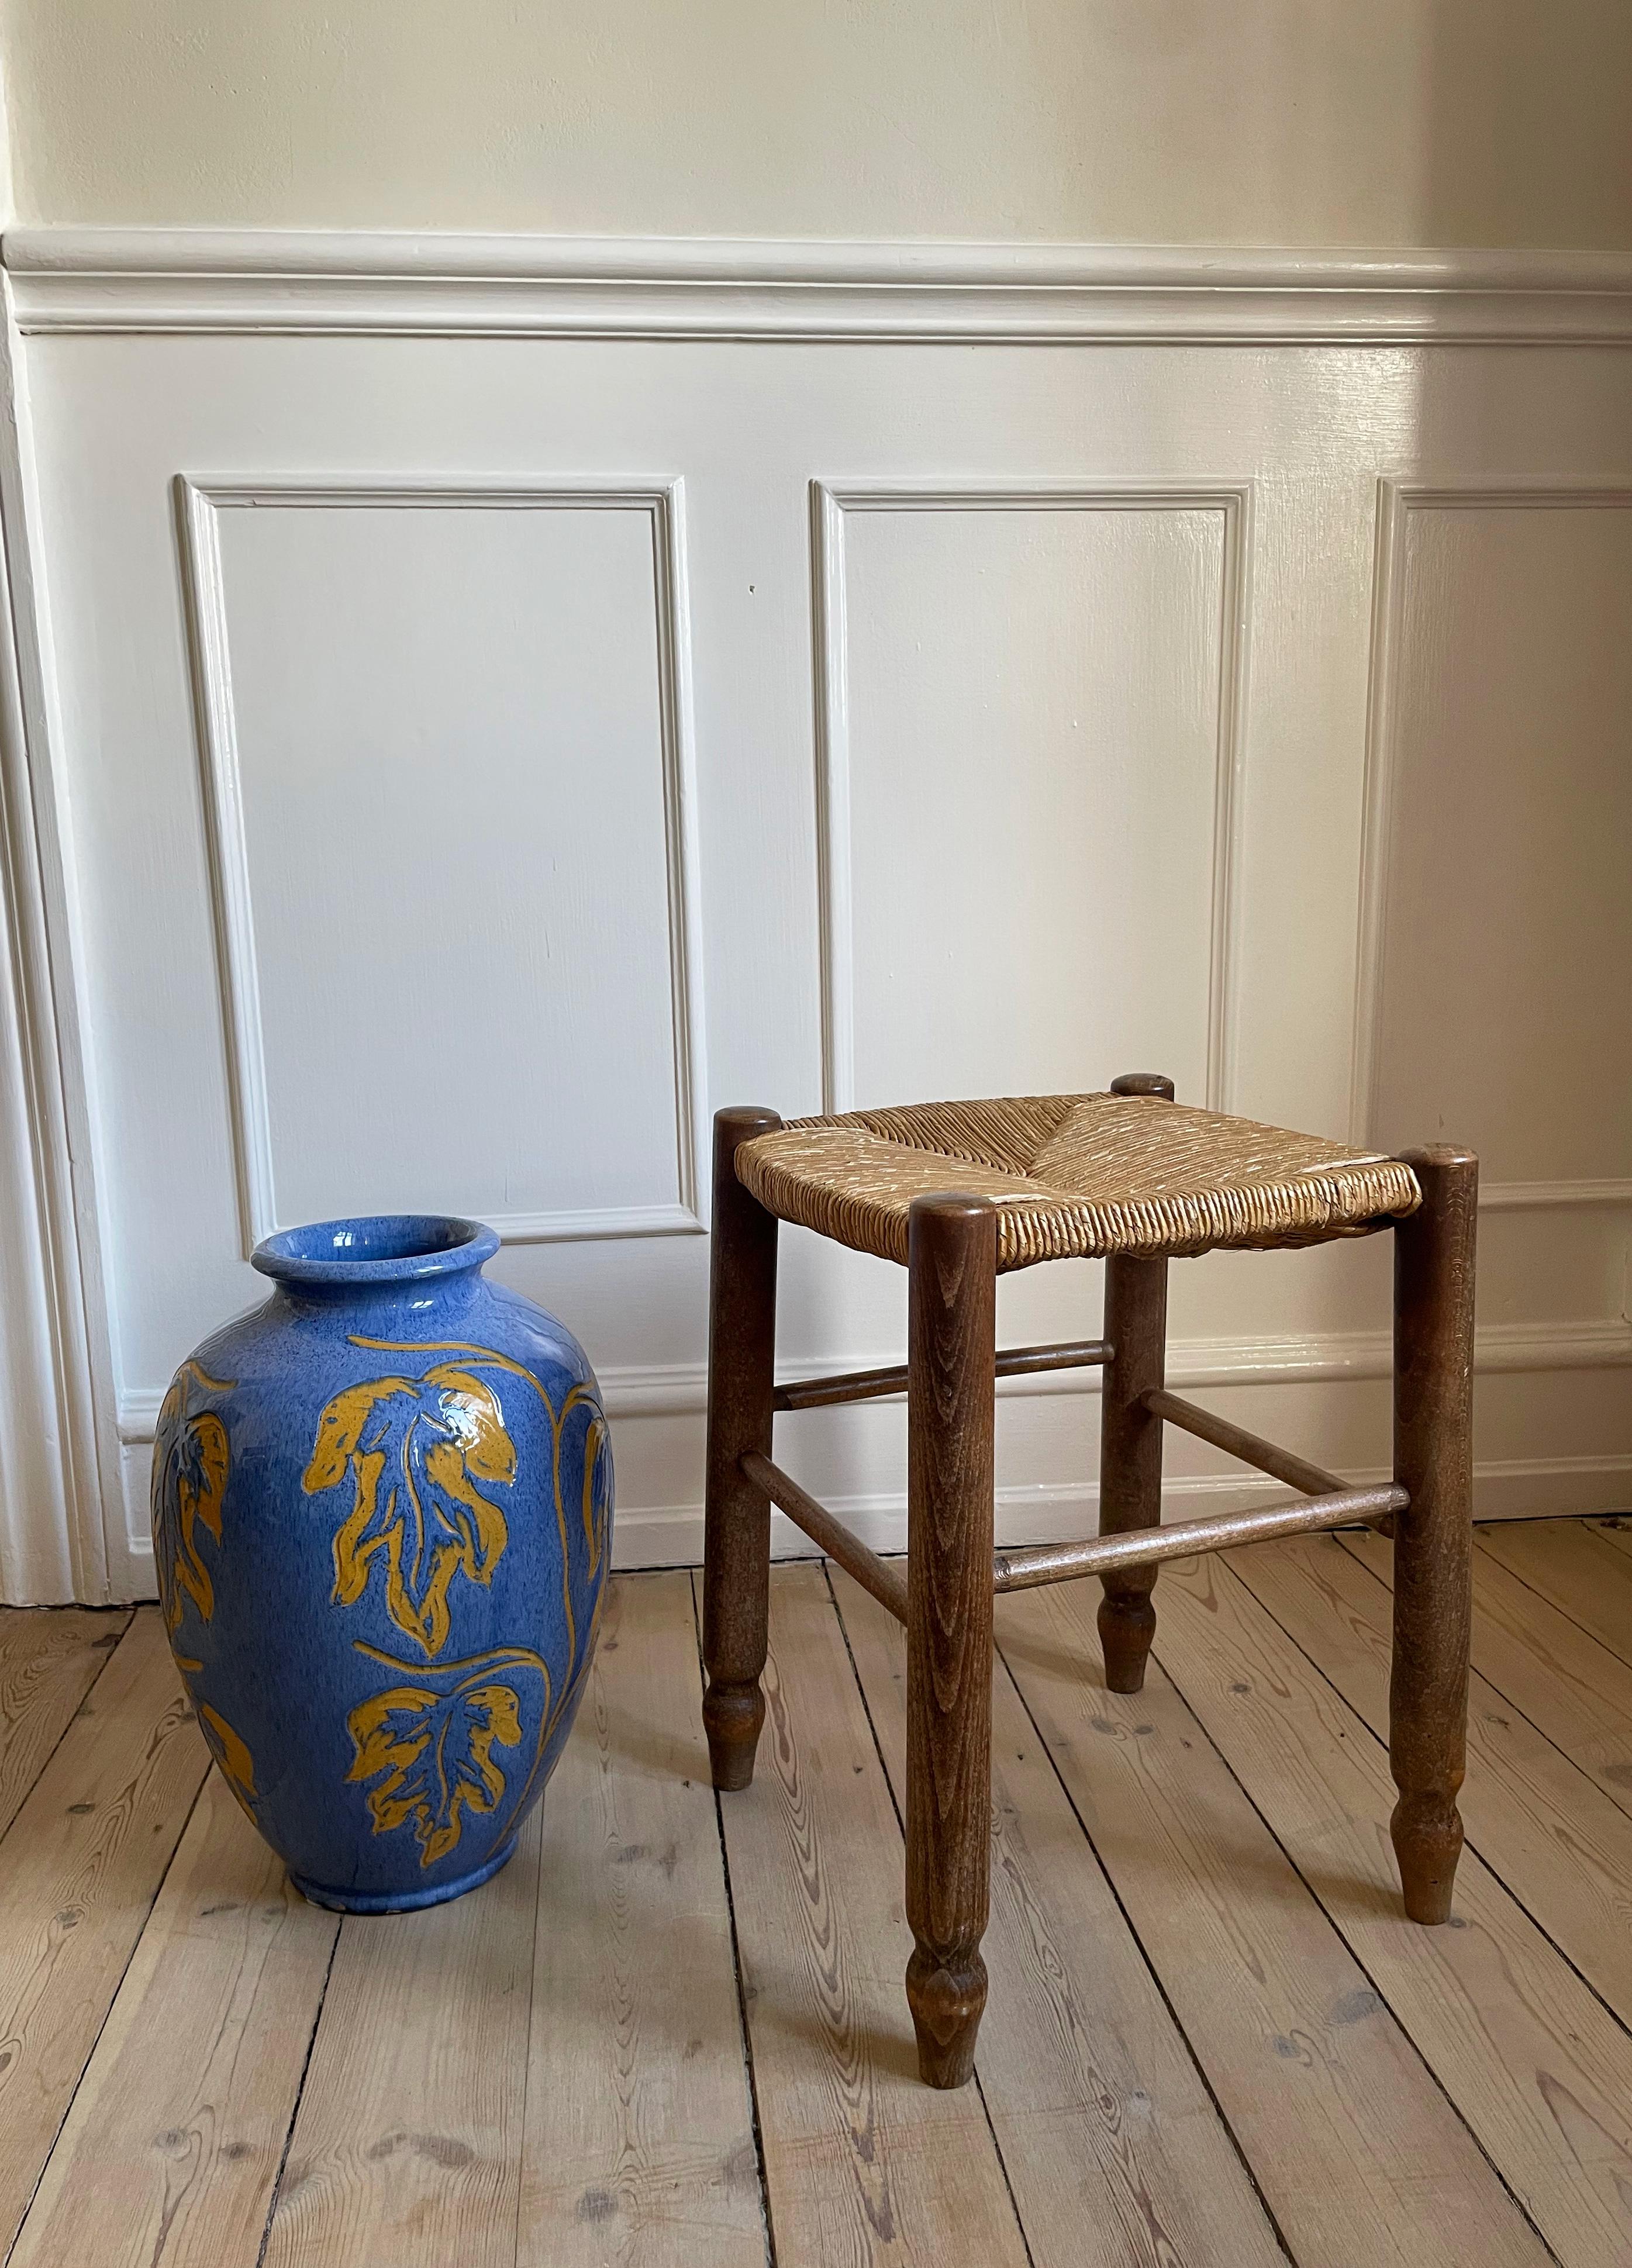 Tabouret vintage fait main en bois foncé avec assise en paille dans le style de Charlotte Perriand et Charles By. Belle condition vintage.
France, années 1950.